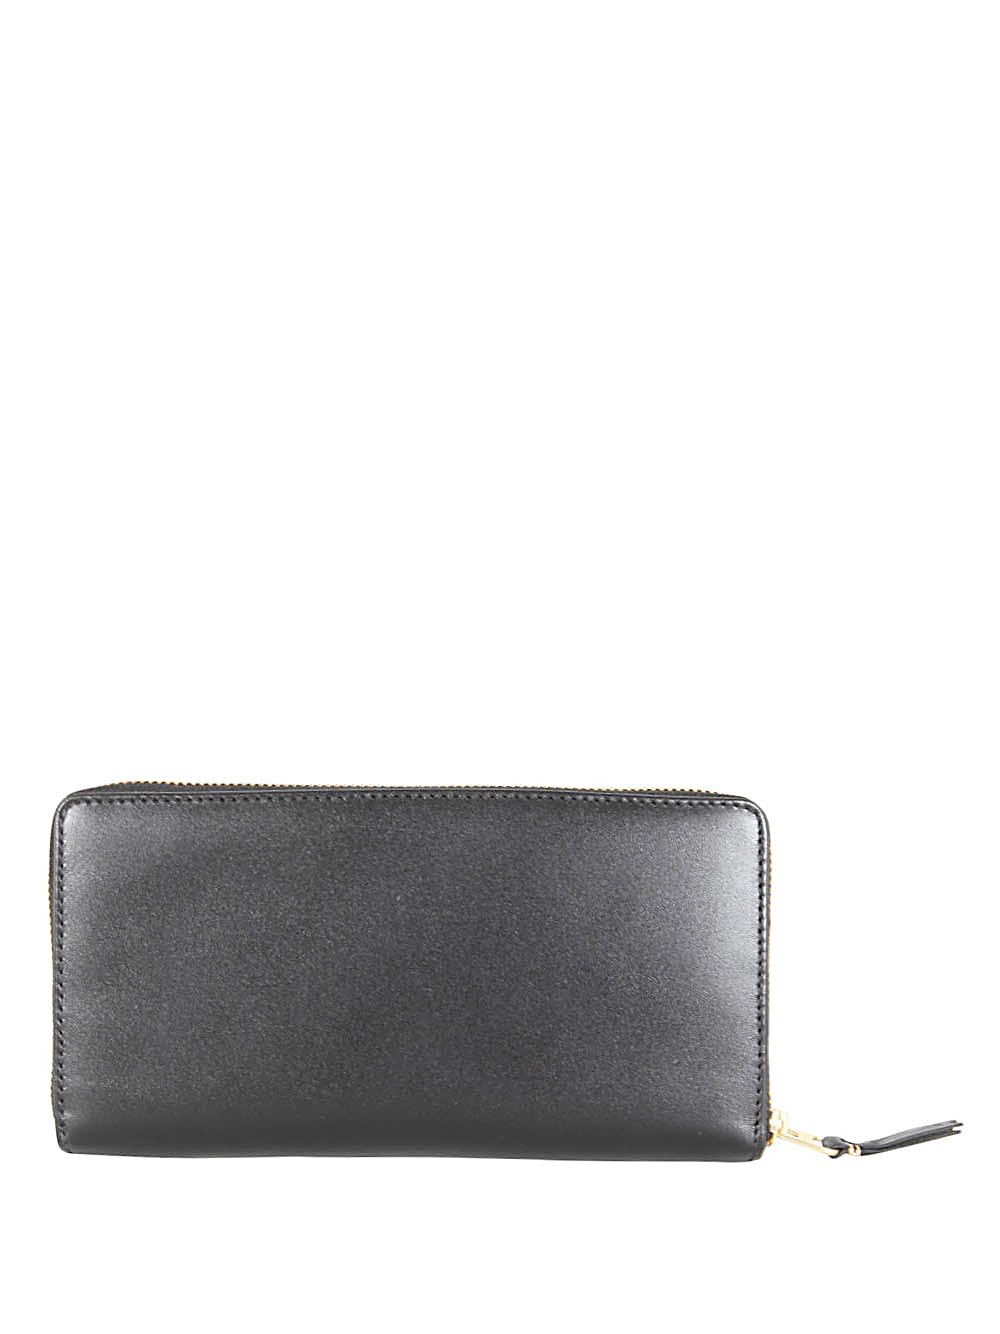 Comme Des Garçons Classic Leather Line Wallet